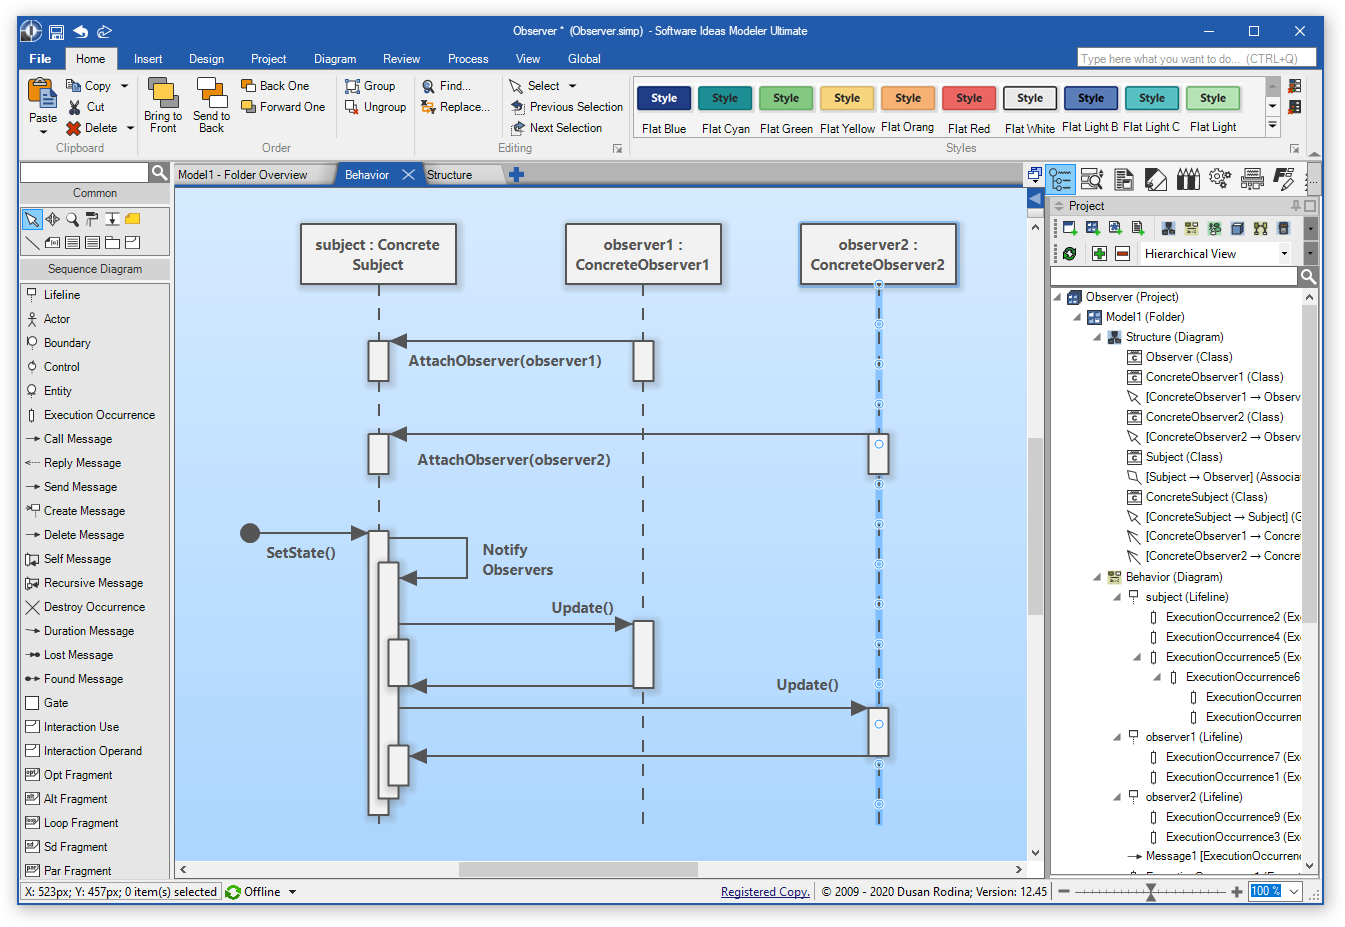 Software Ideas Modeler - Main Screen